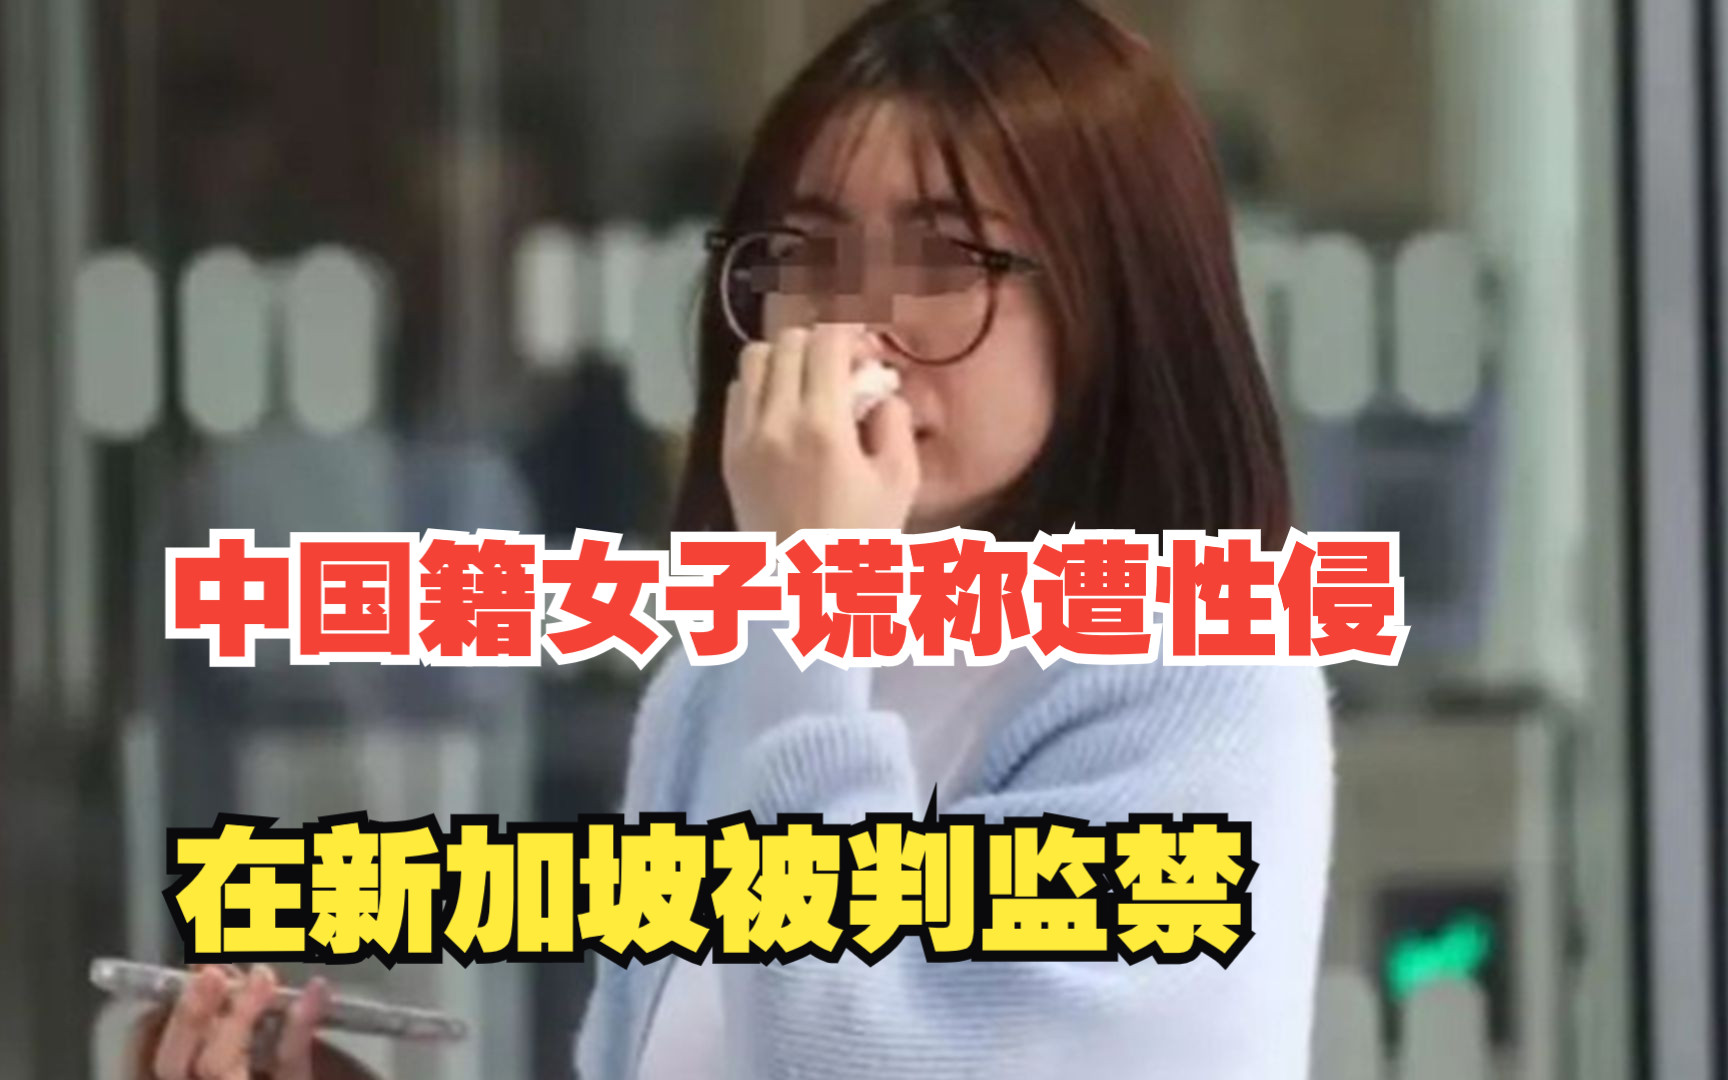 “为让前男友方惹上麻烦”中国籍女子谎称遭性侵，在新加坡被判监禁